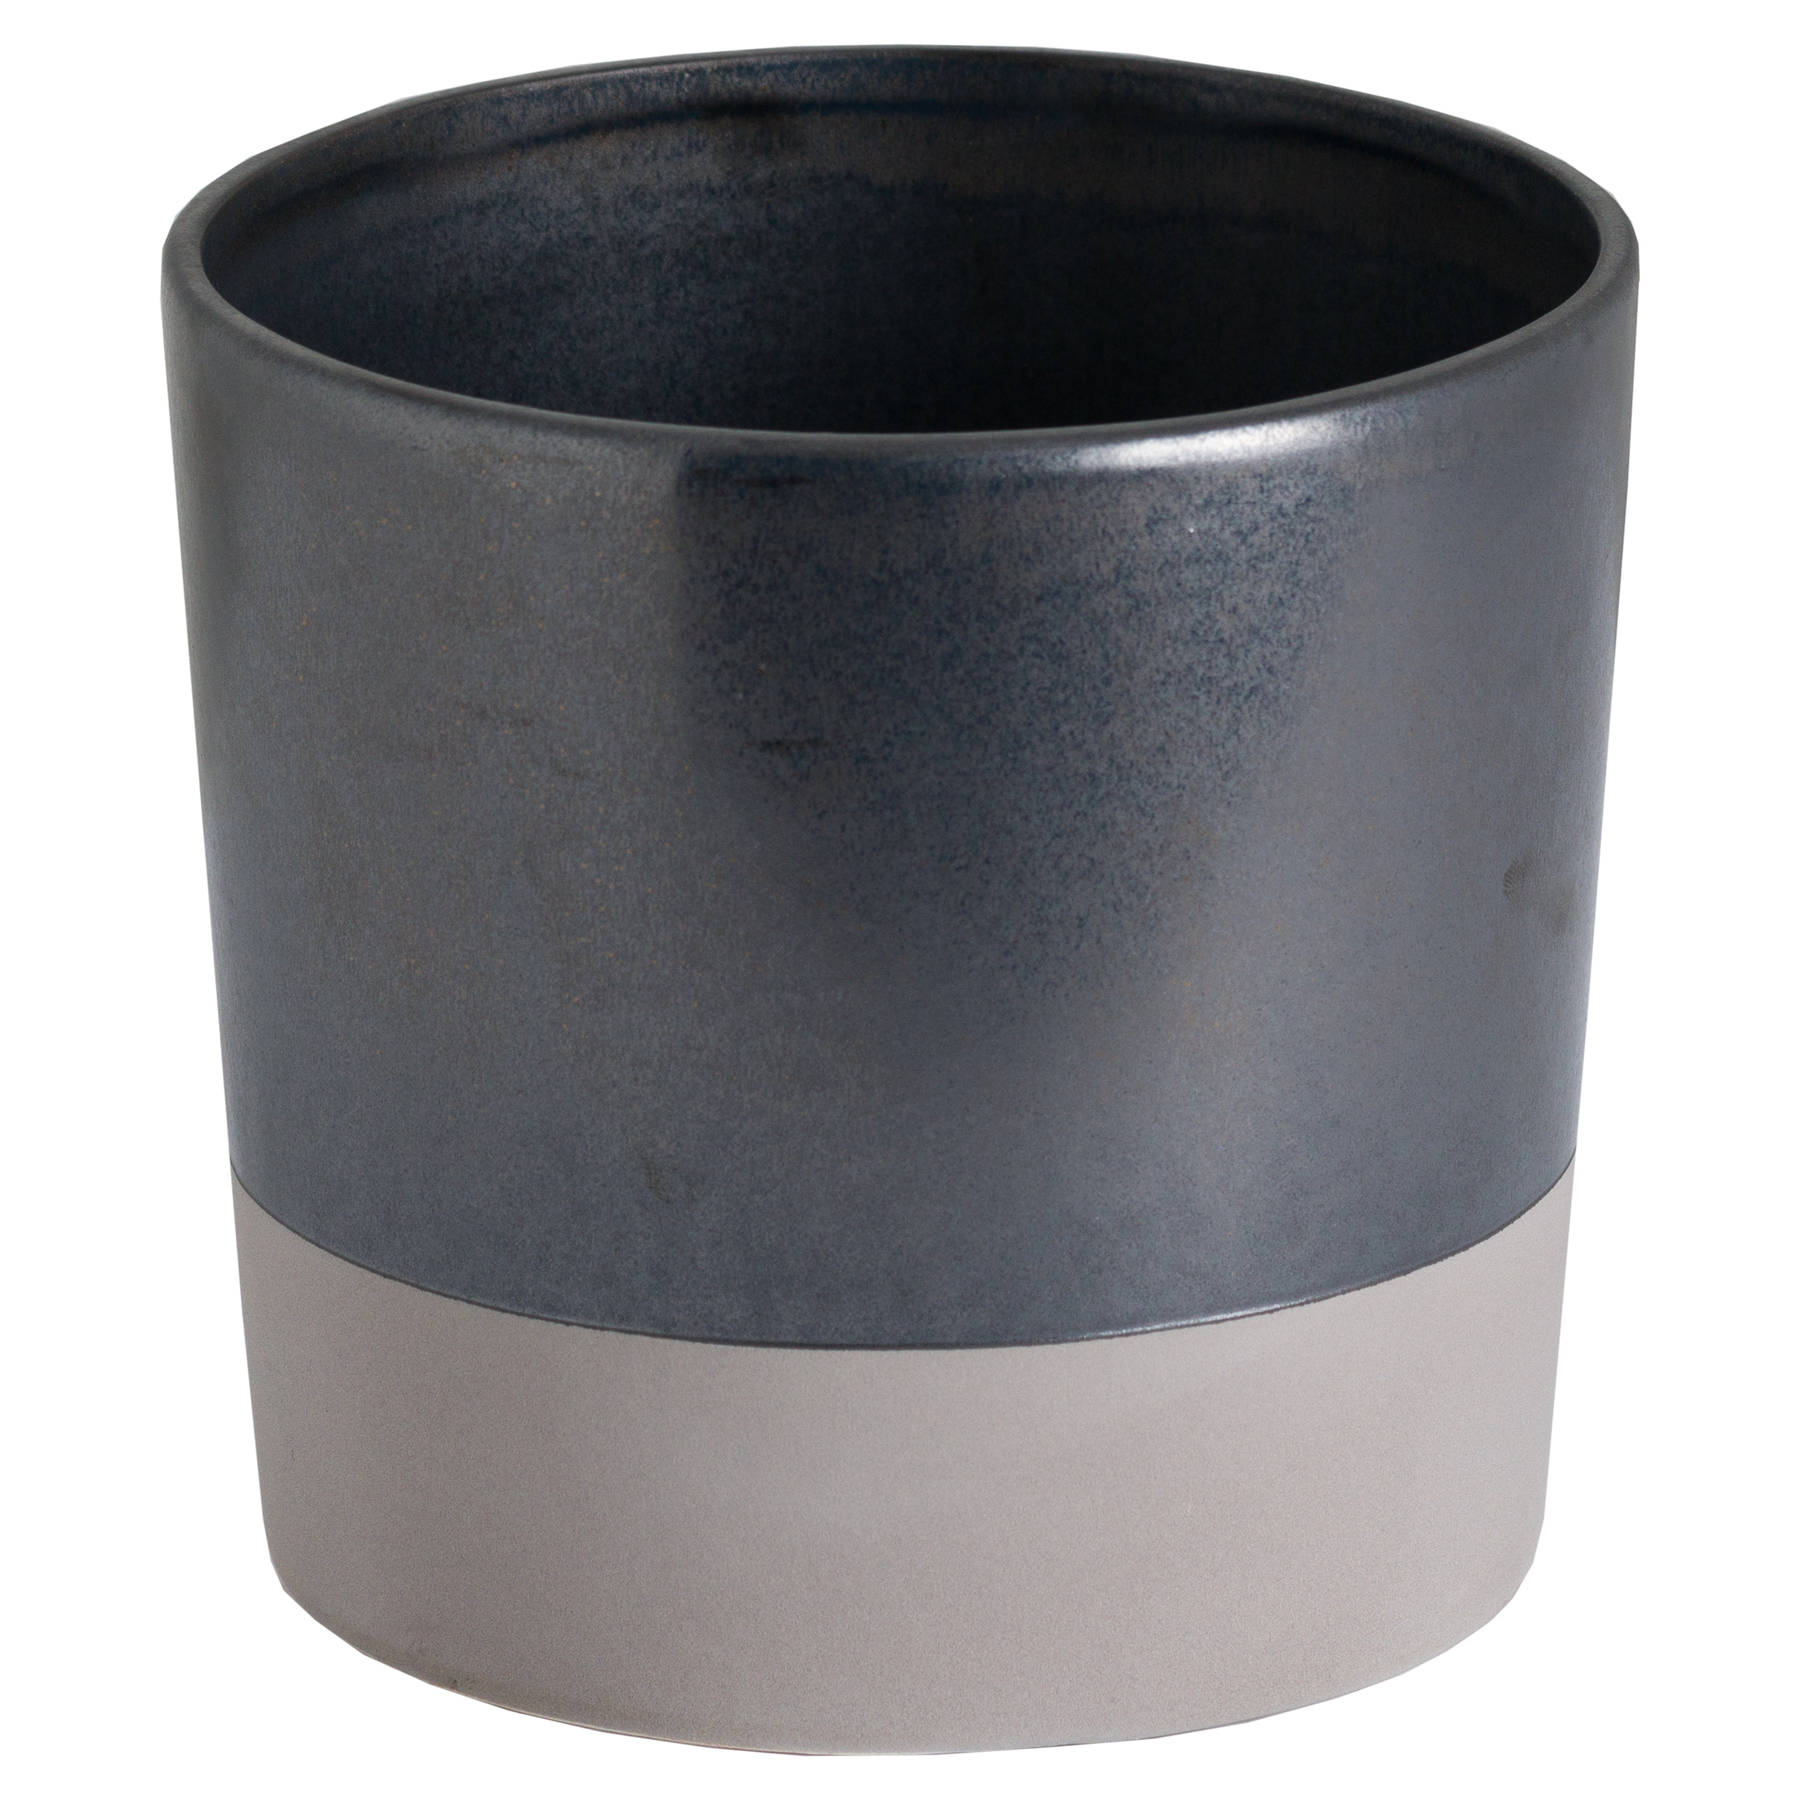 Large Metallic Grey Ceramic Planter - Image 1